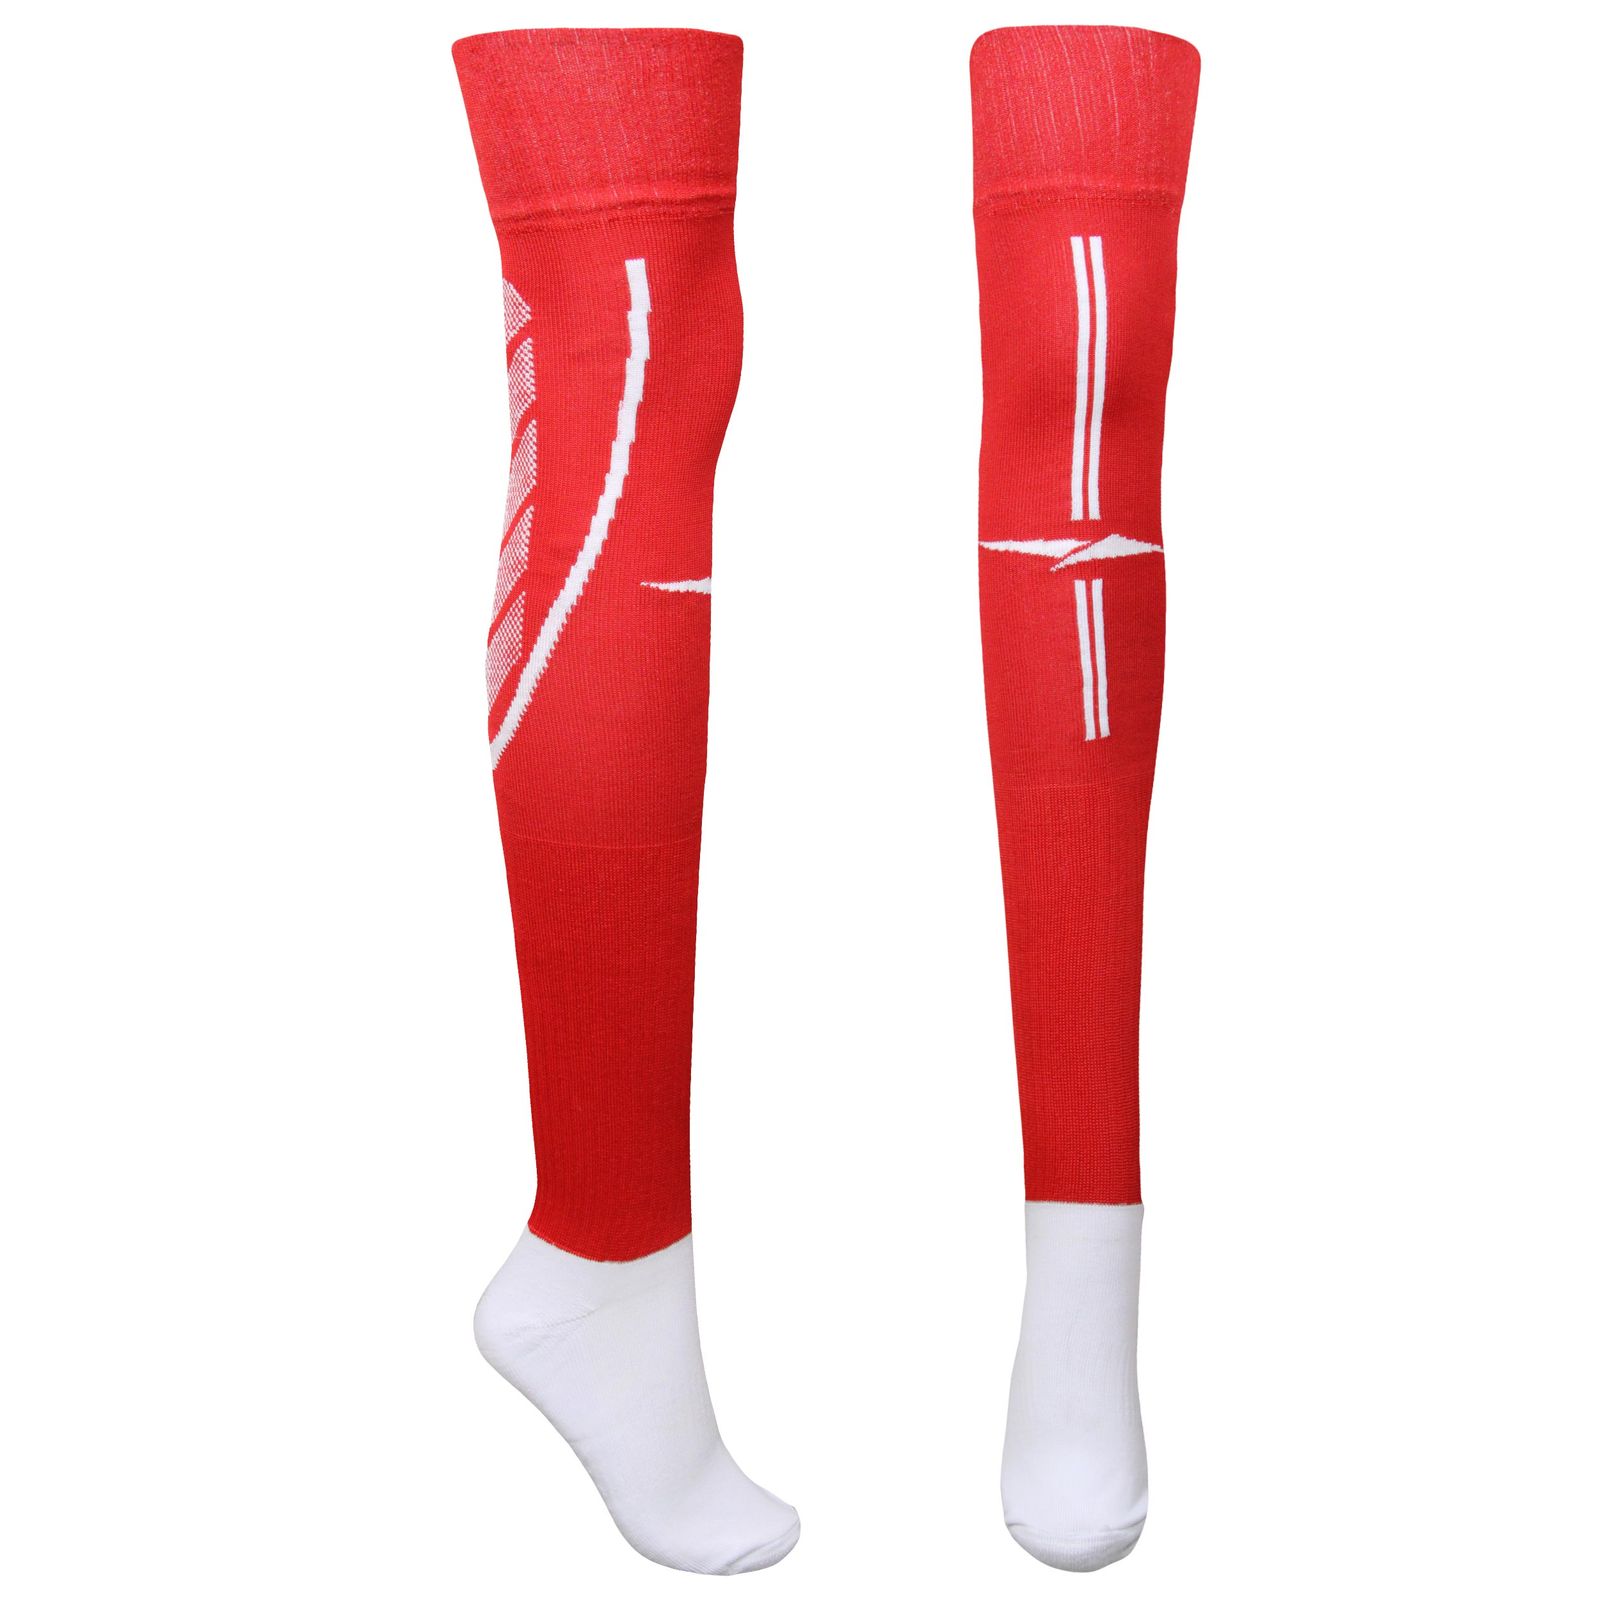 جوراب ورزشی ساق بلند مردانه ماییلدا مدل کف حوله ای کد 4187  رنگ قرمز -  - 1